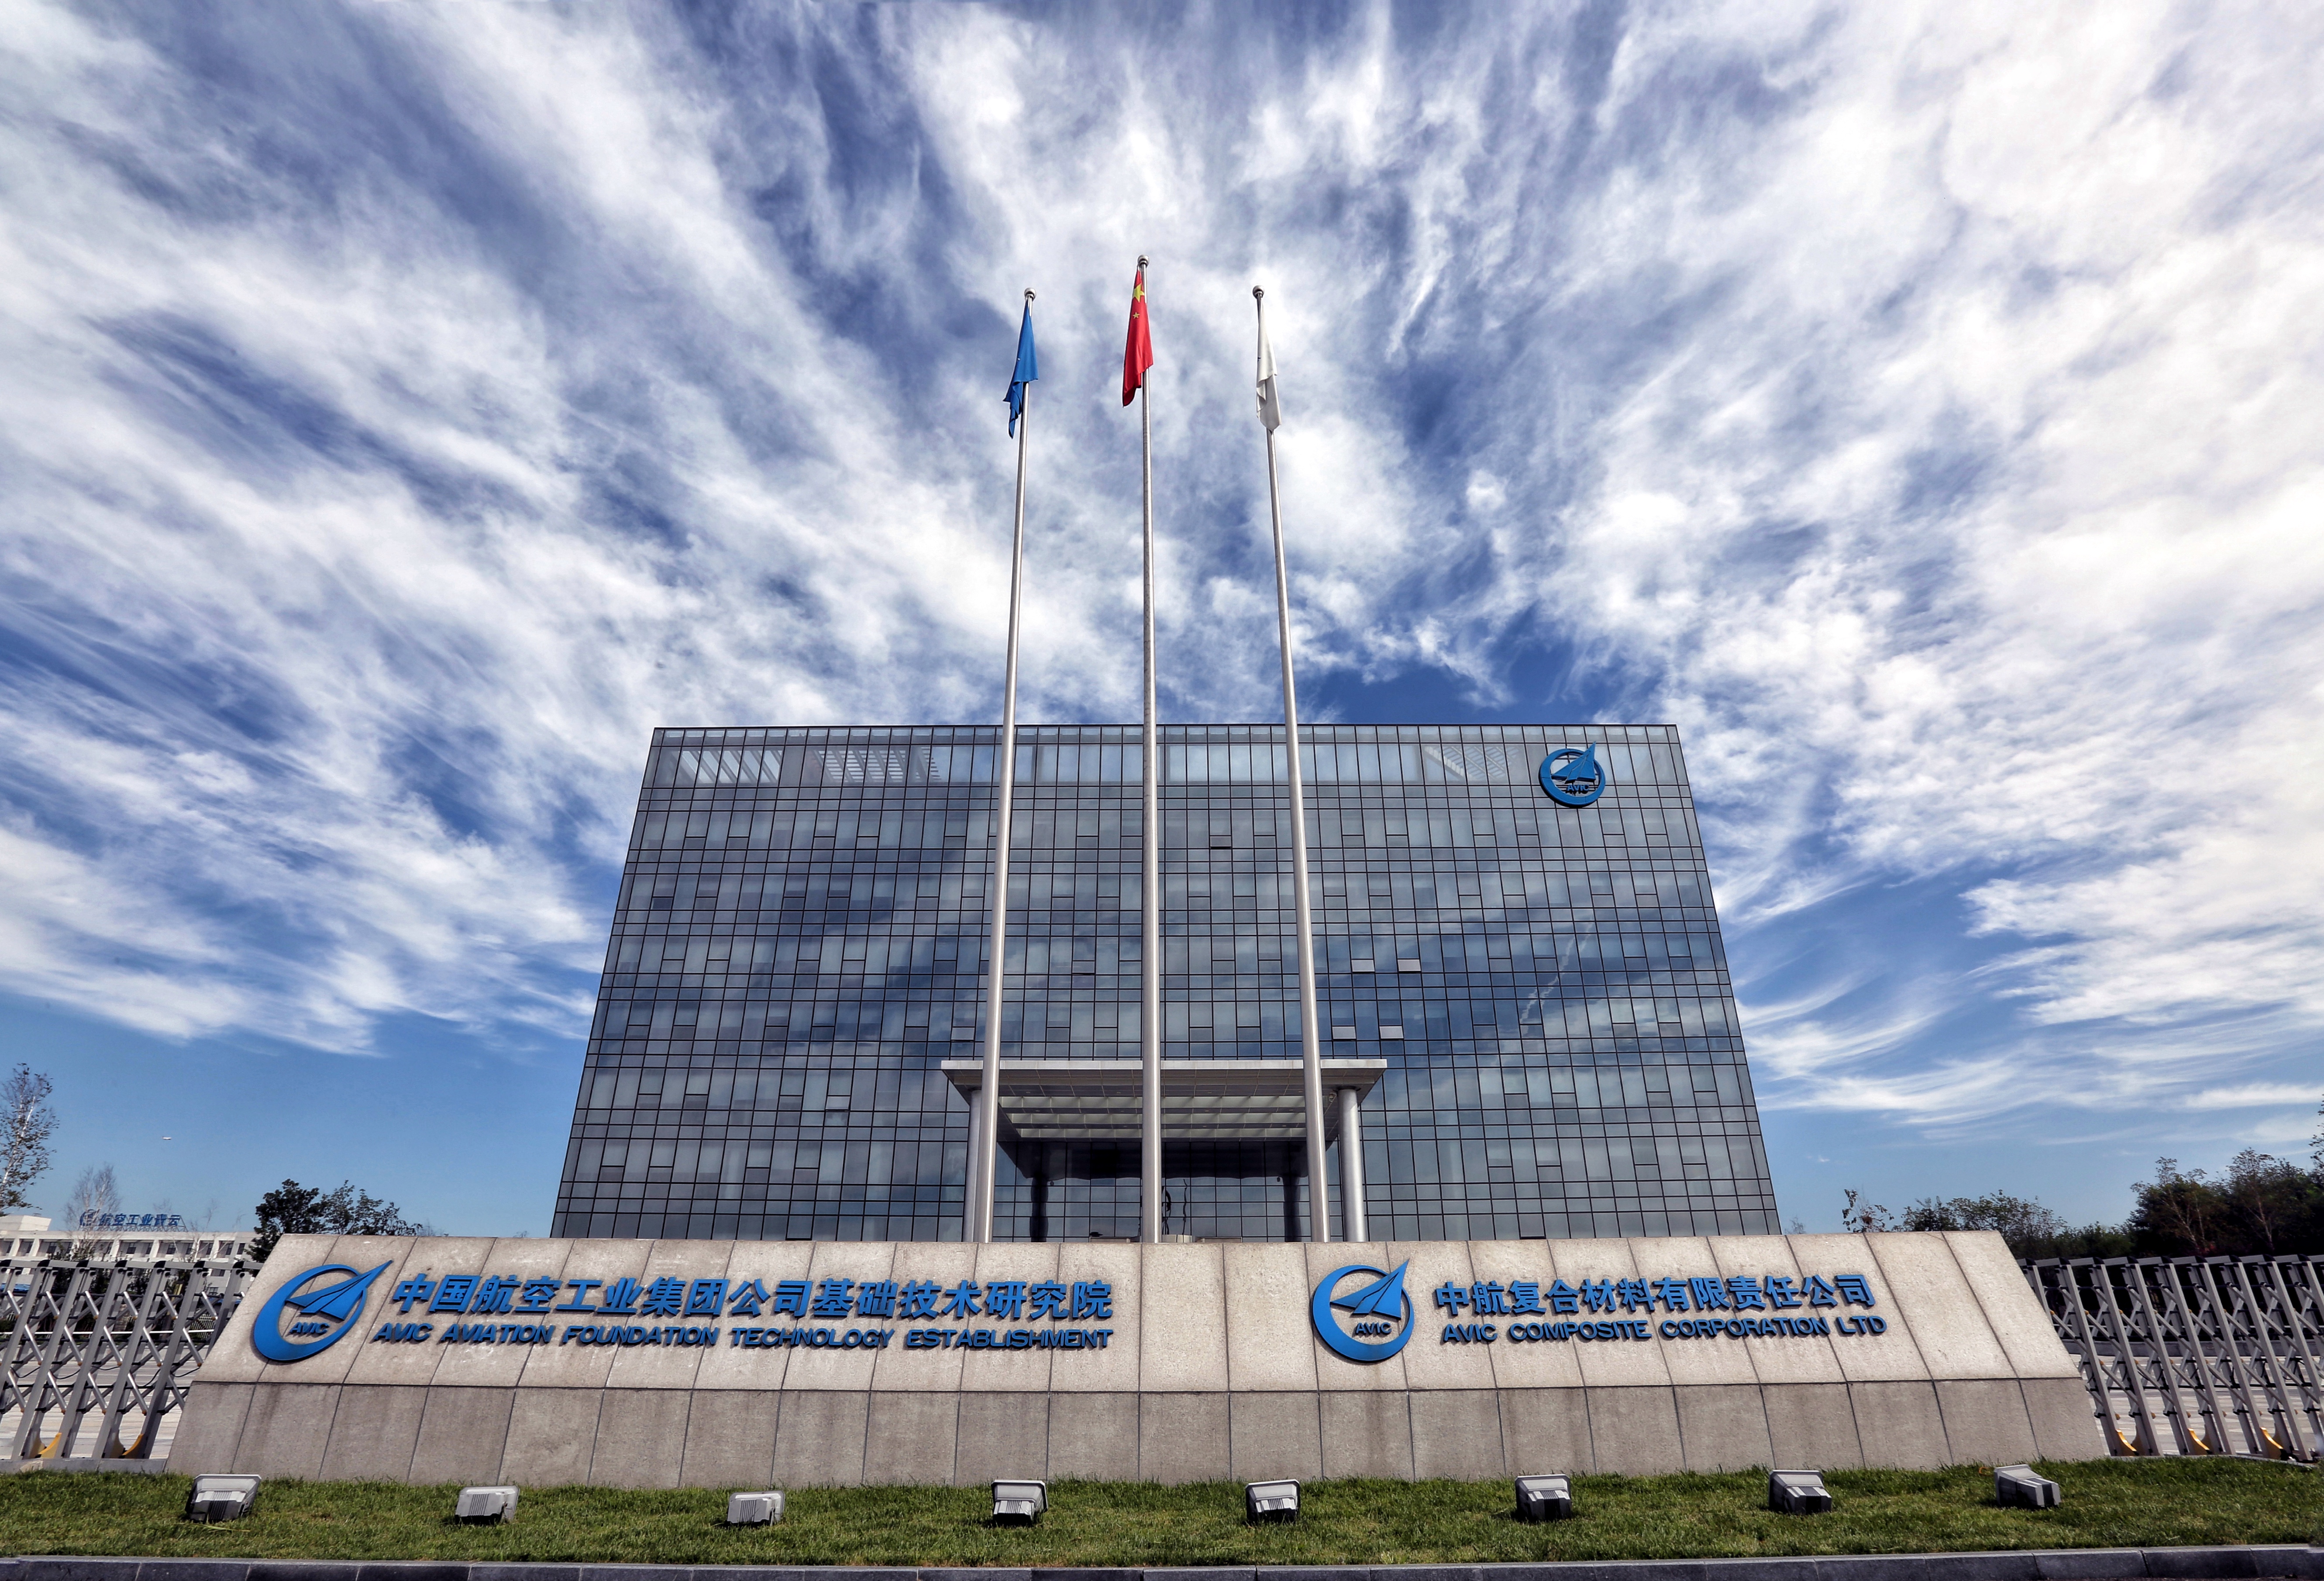 工业集团公司基础技术研究院,是由中航工业所属北京航空材料研究院